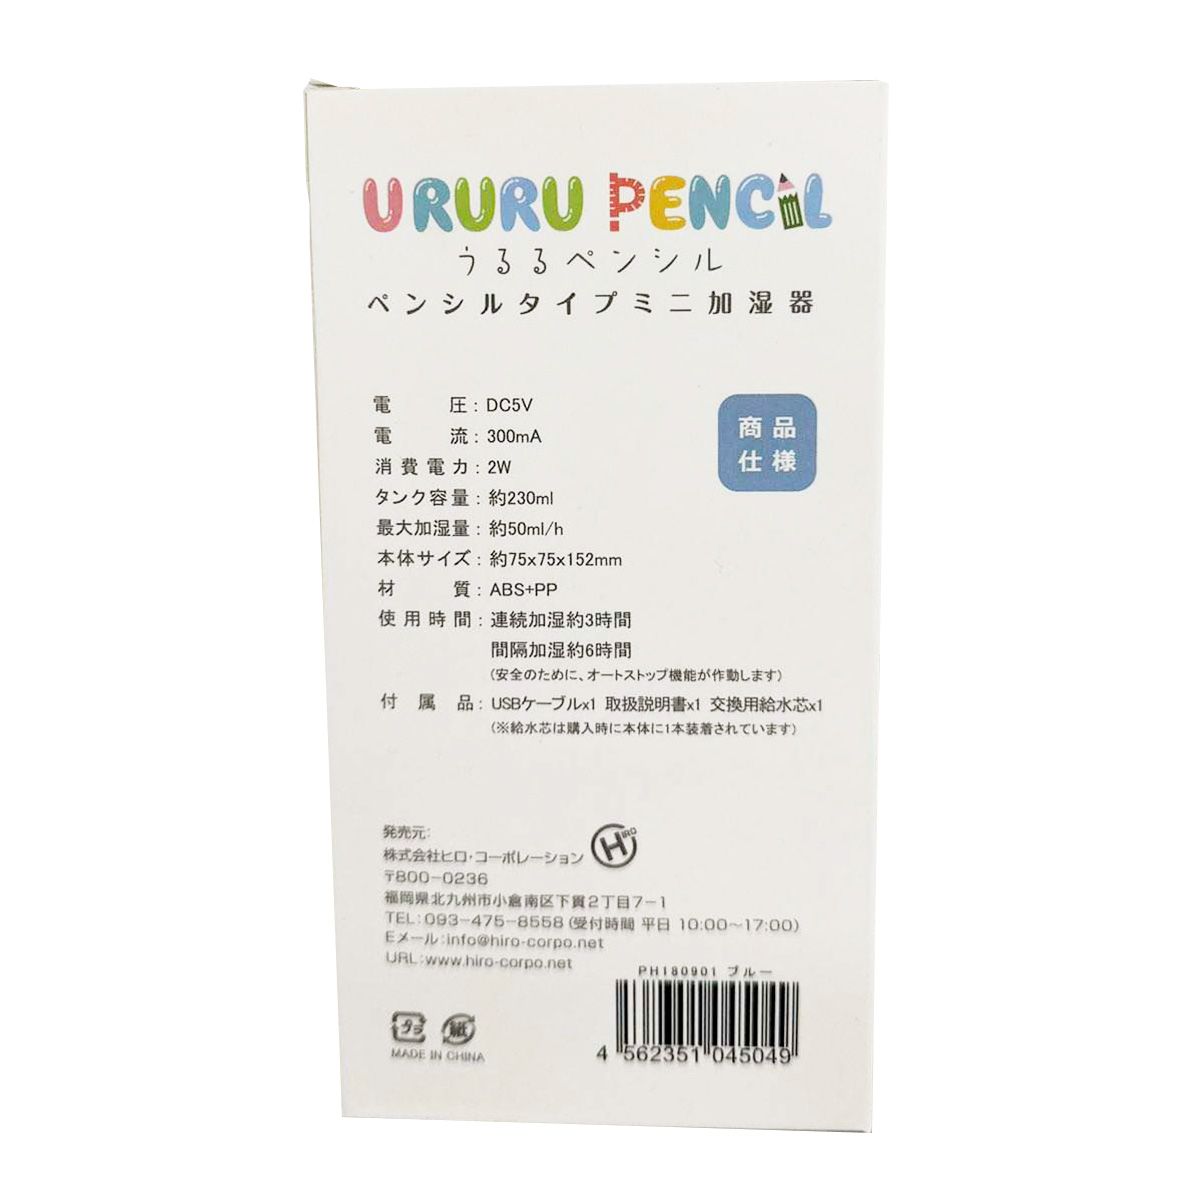 ペンシル型 ミニ加湿器 スチーマー URURU PENCIL（うるるぺんしる）ブルー  ヒロ・コーポレーション  323378